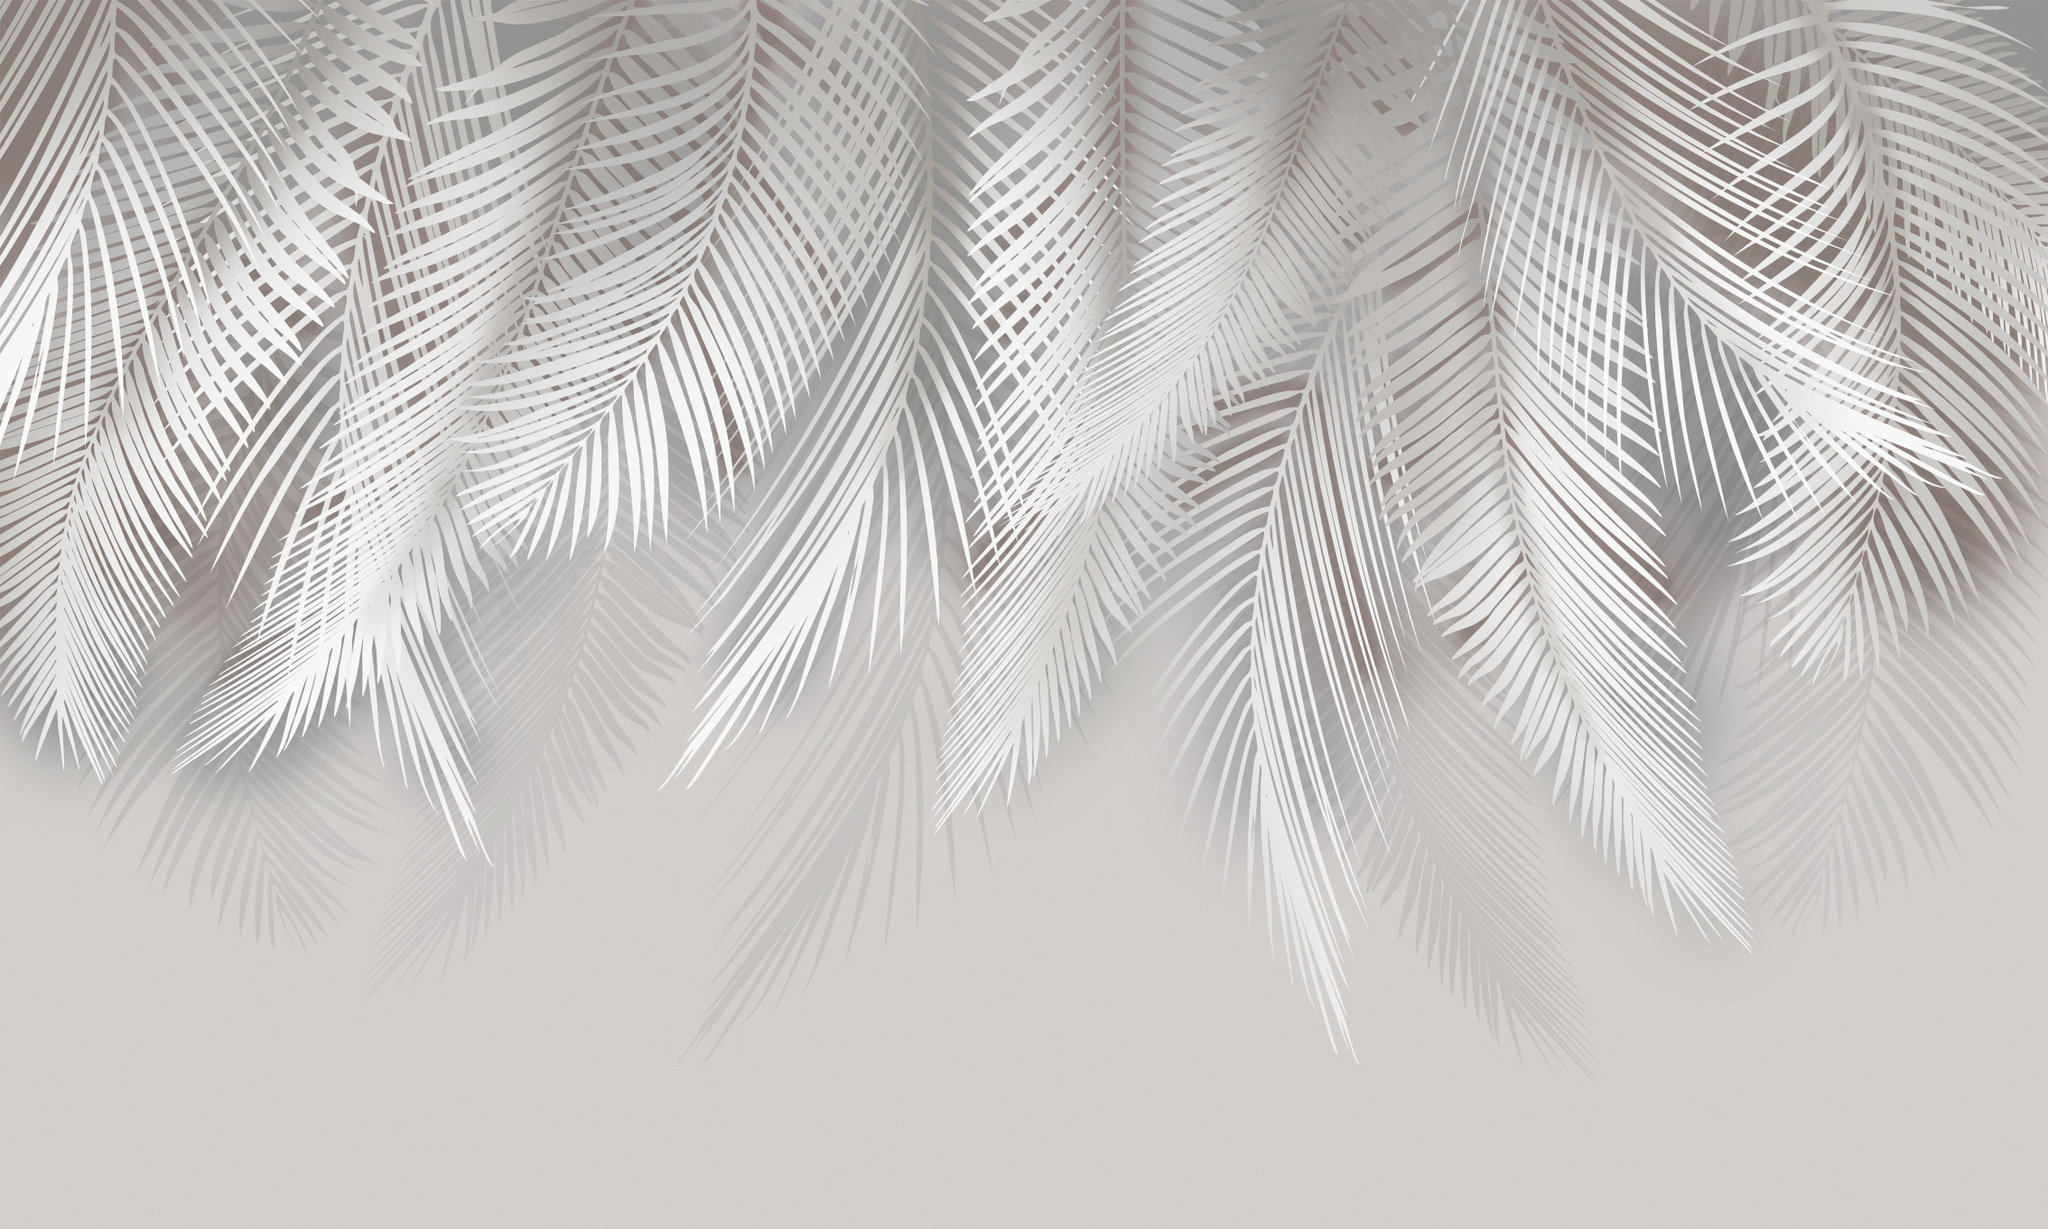 фотообои пальмовые листья в интерьере